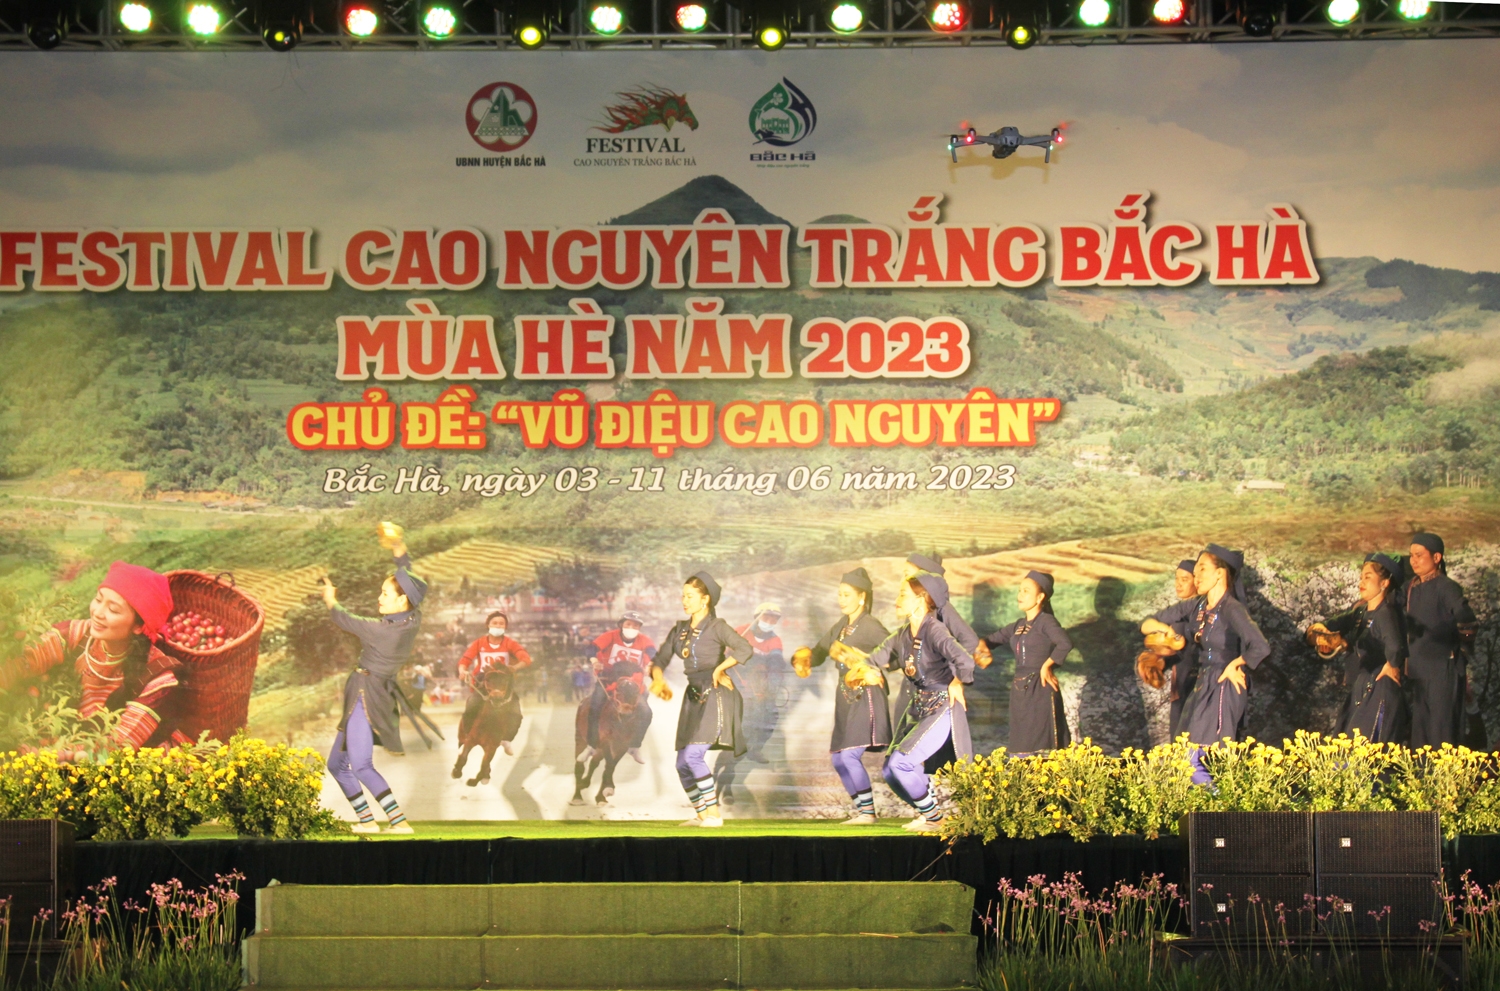 Khai mạc "Festival Cao nguyên trắng Bắc Hà mùa Hè năm 2023" với chủ đề “Vũ điệu cao nguyên” 7